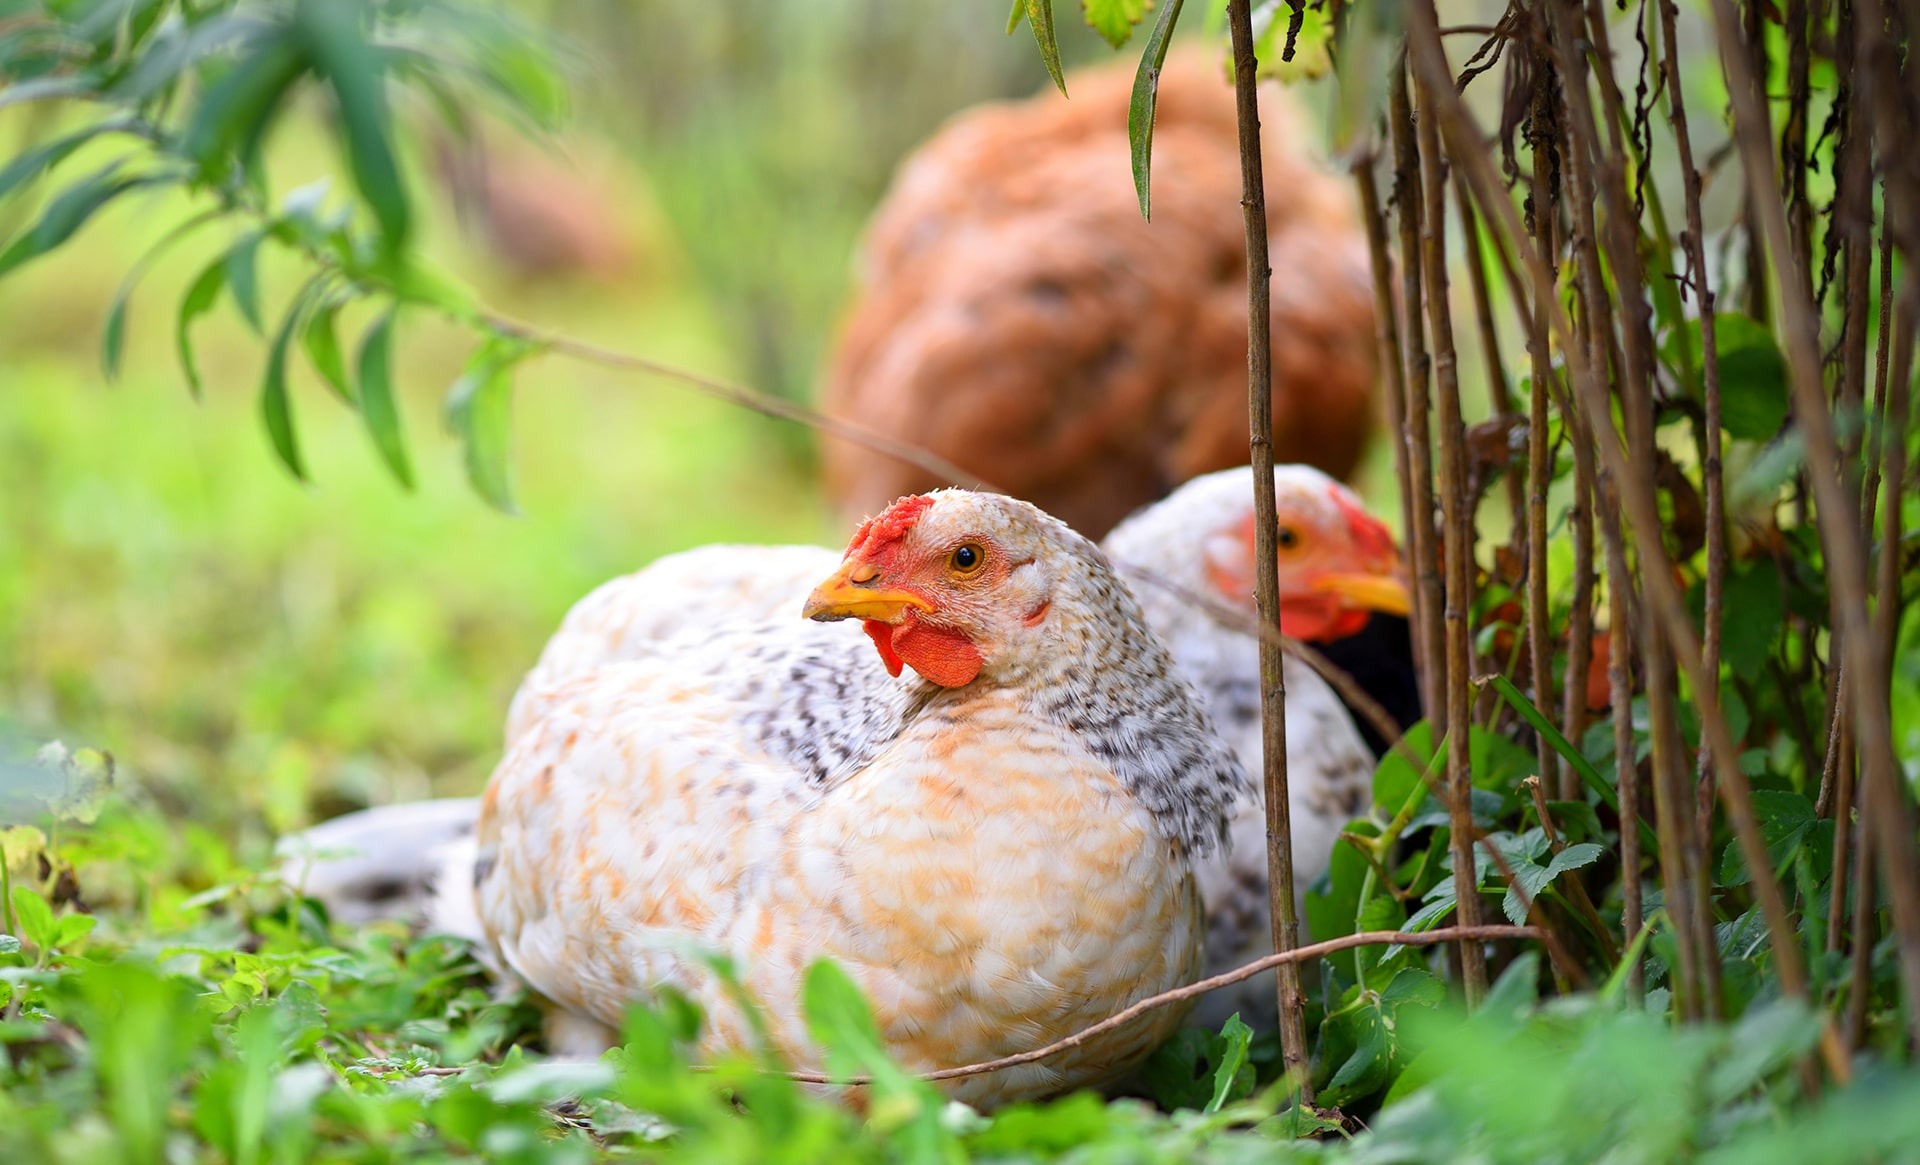 ¿Es el ruido peligroso para las gallinas?